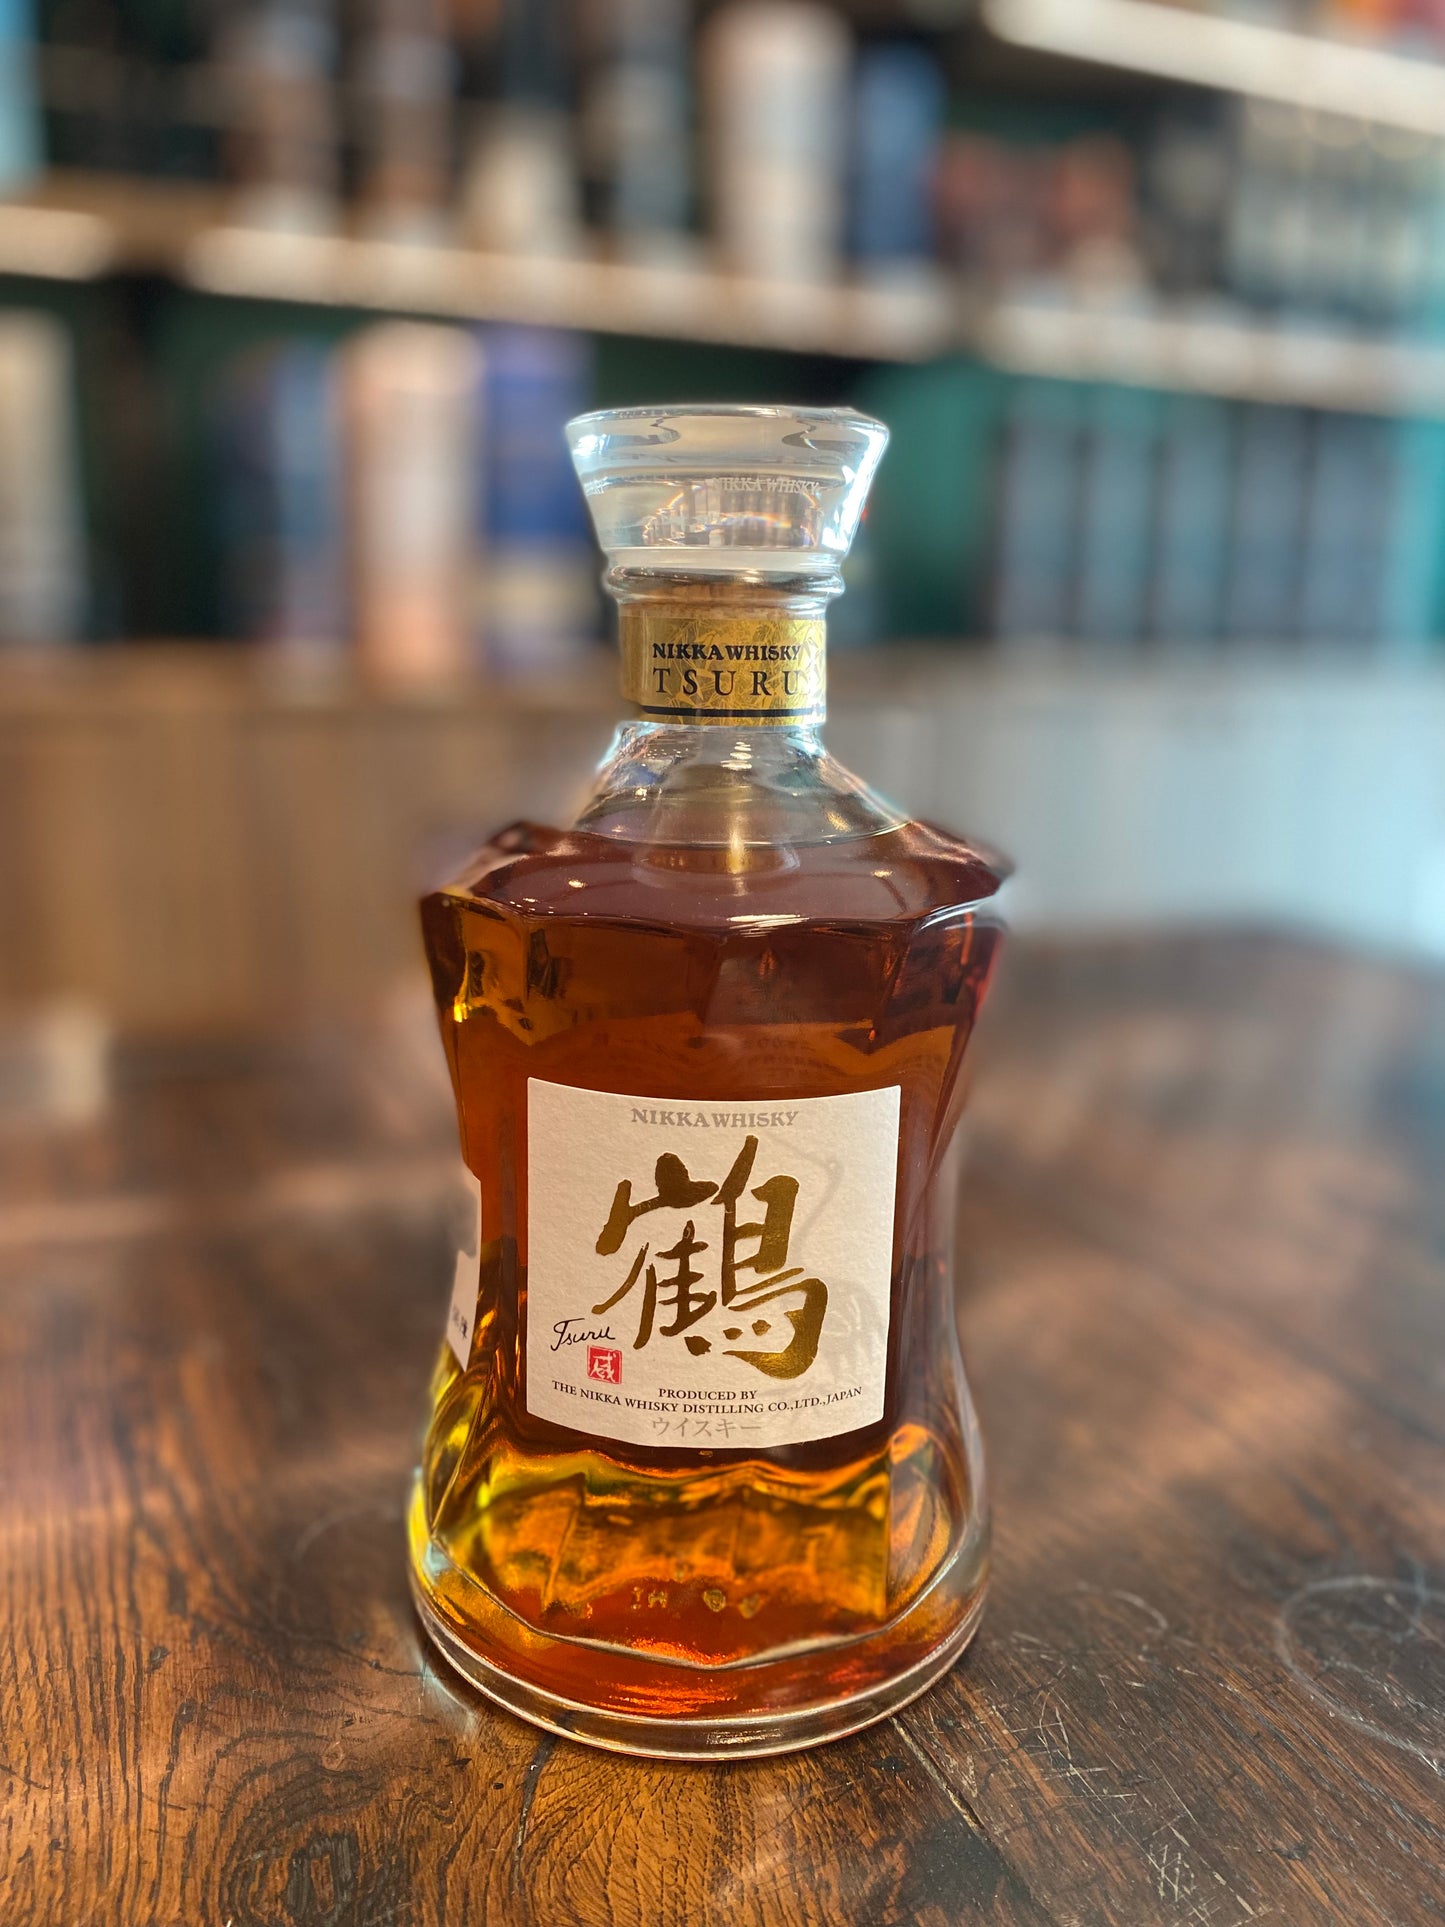 日華威士忌鶴(余市蒸餾室限定)金字威士忌NIKKA Whisky Magazine》評選為「BEST OF THE whisky 」700ml,43%